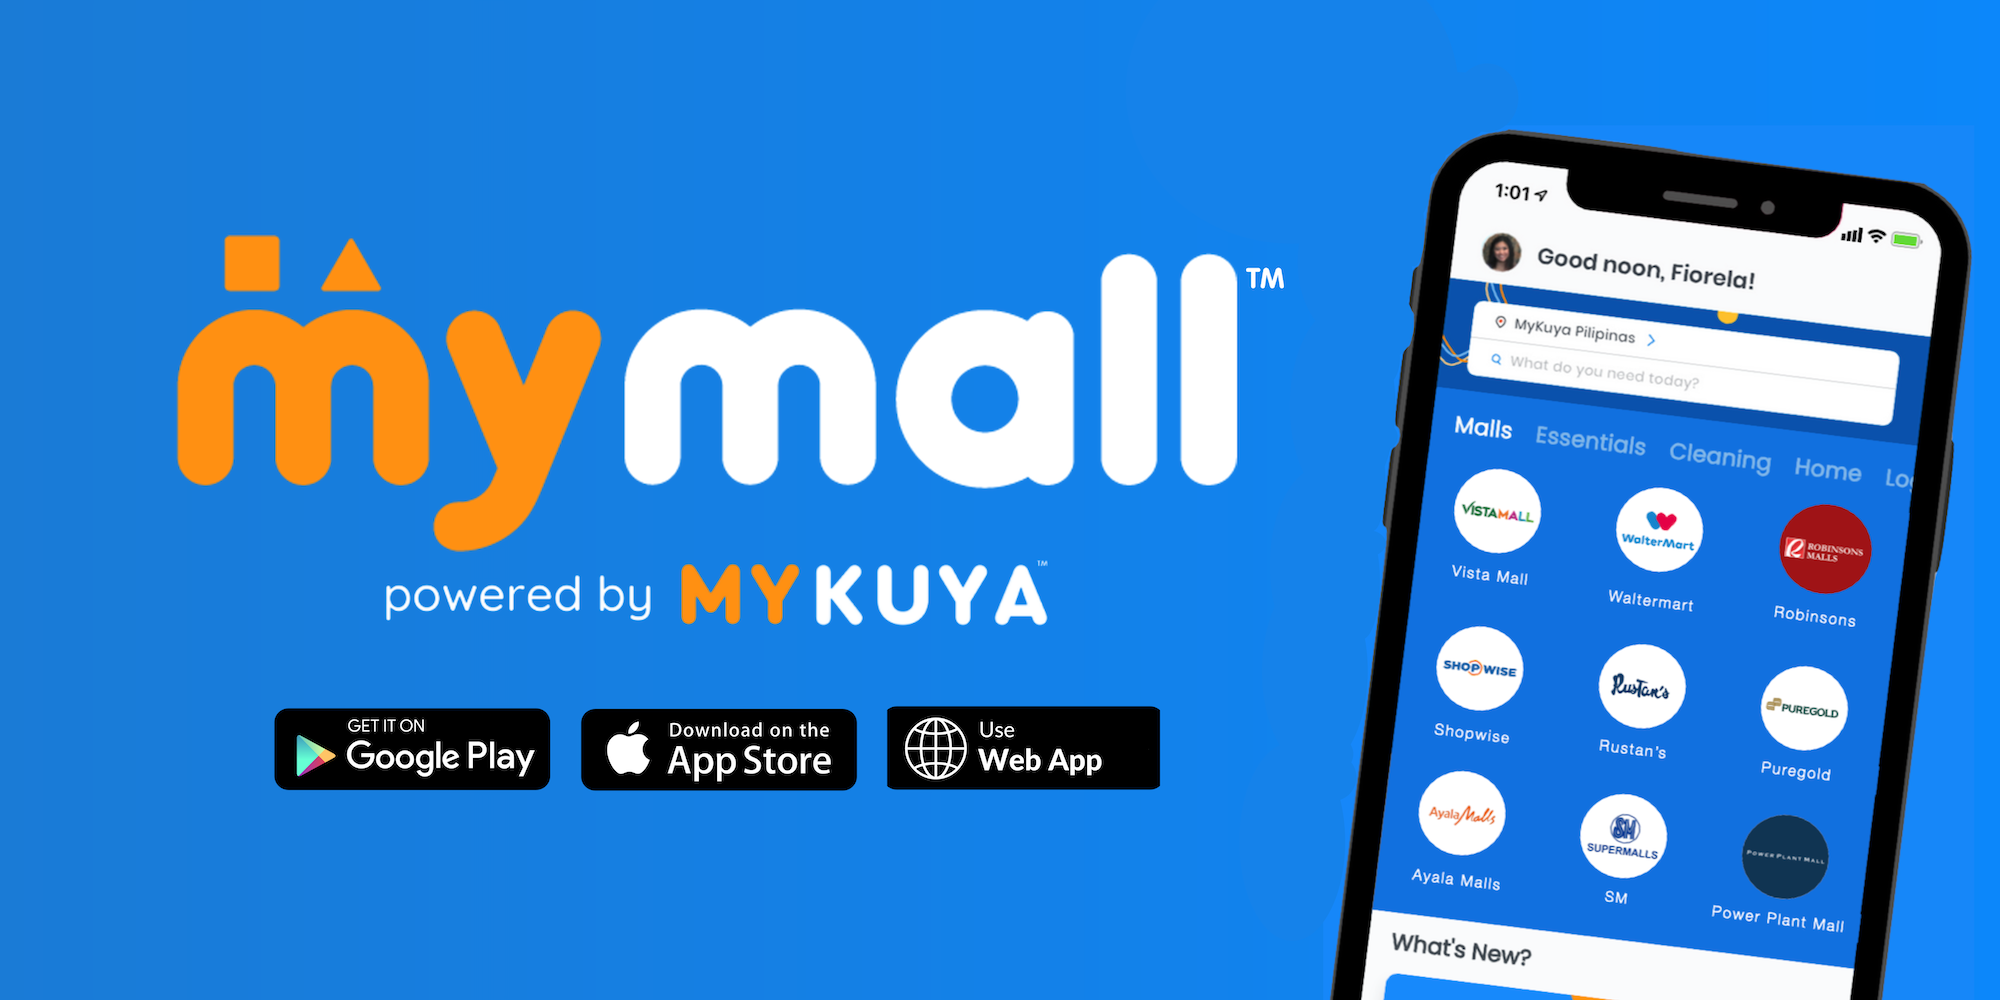 pabili service apps - mykuya